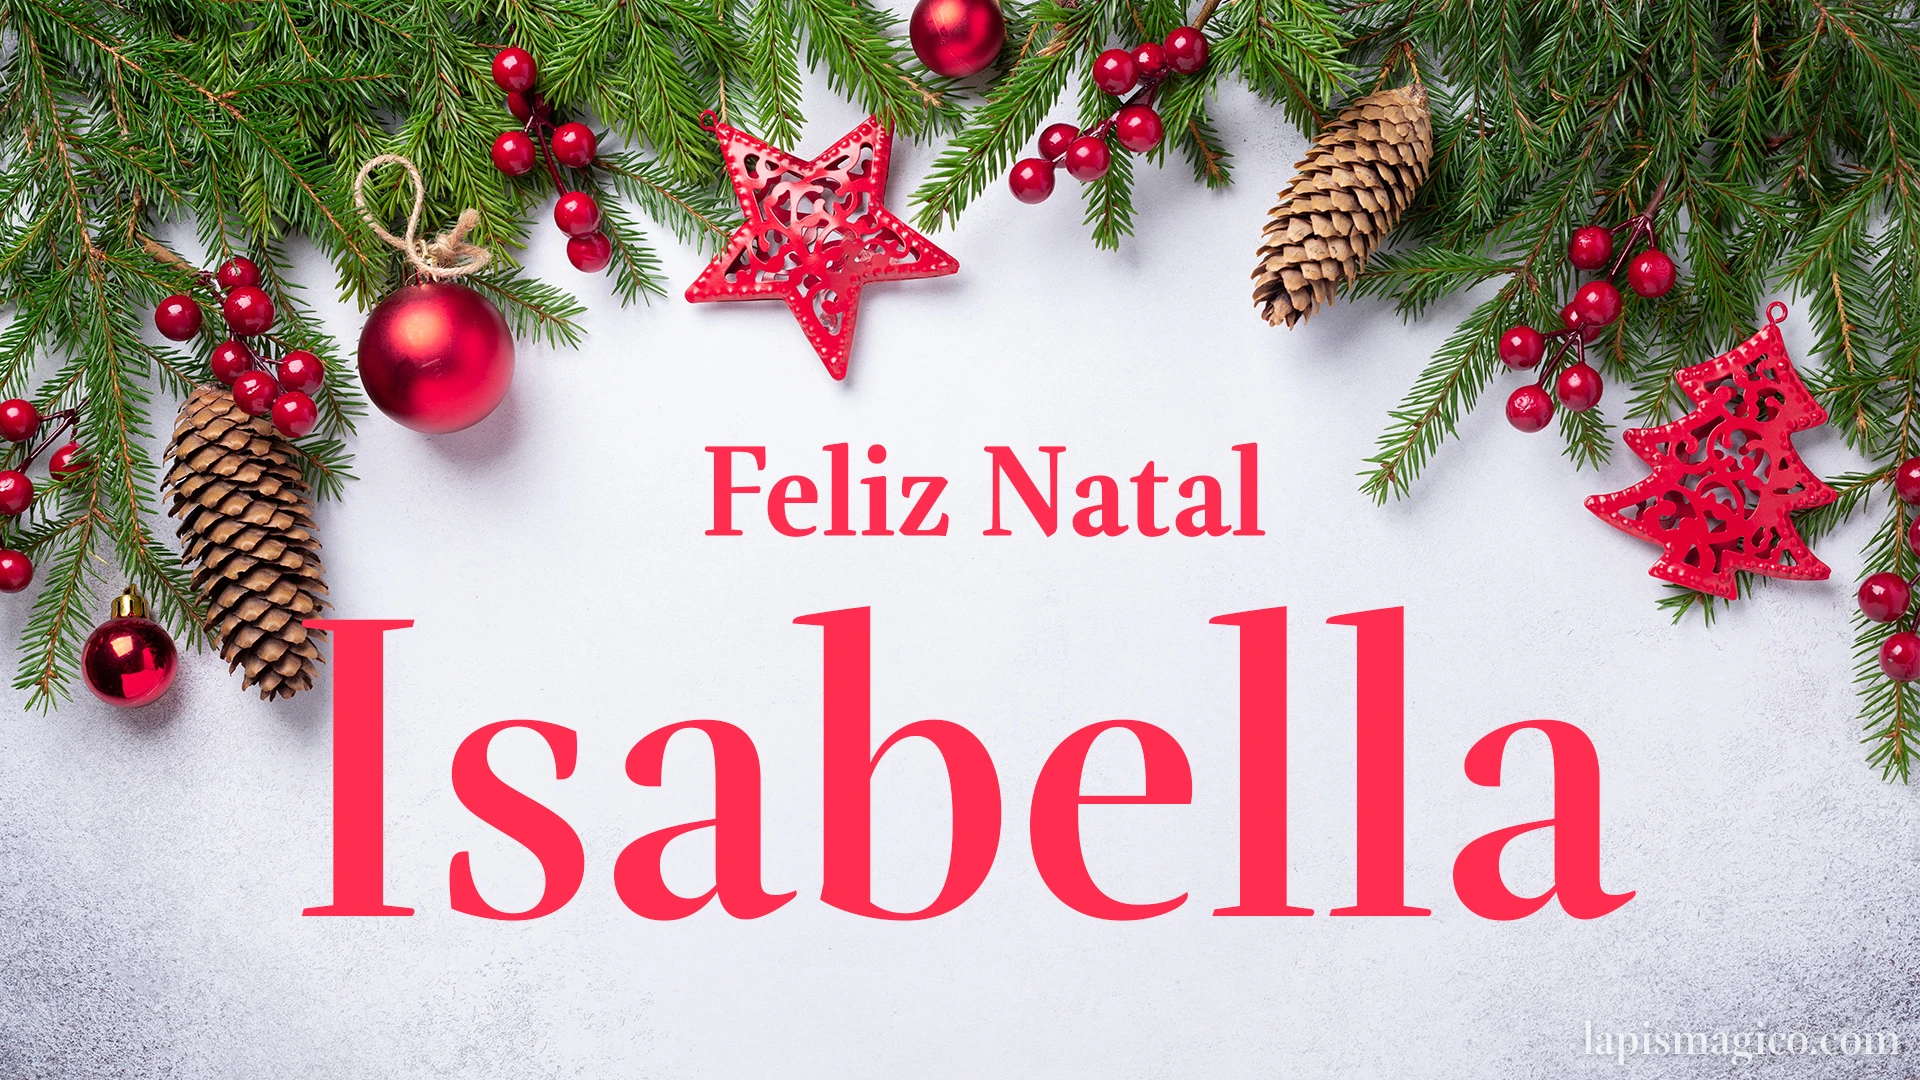 Oh Isabella, cinco postais de Feliz Natal Postal com o teu nome